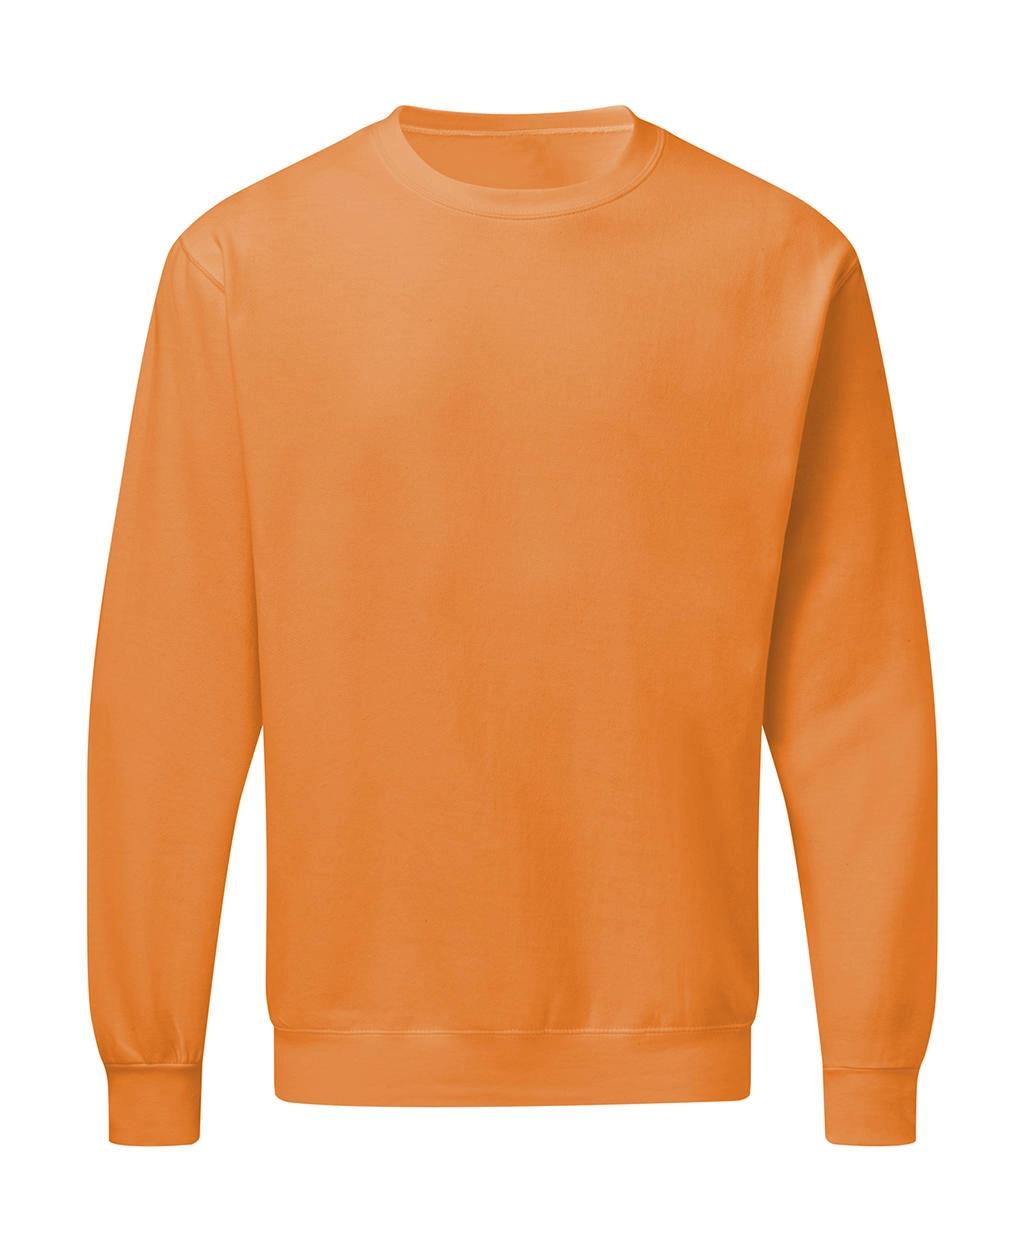 Crew Neck Sweatshirt Men zum Besticken und Bedrucken in der Farbe Bright Orange mit Ihren Logo, Schriftzug oder Motiv.